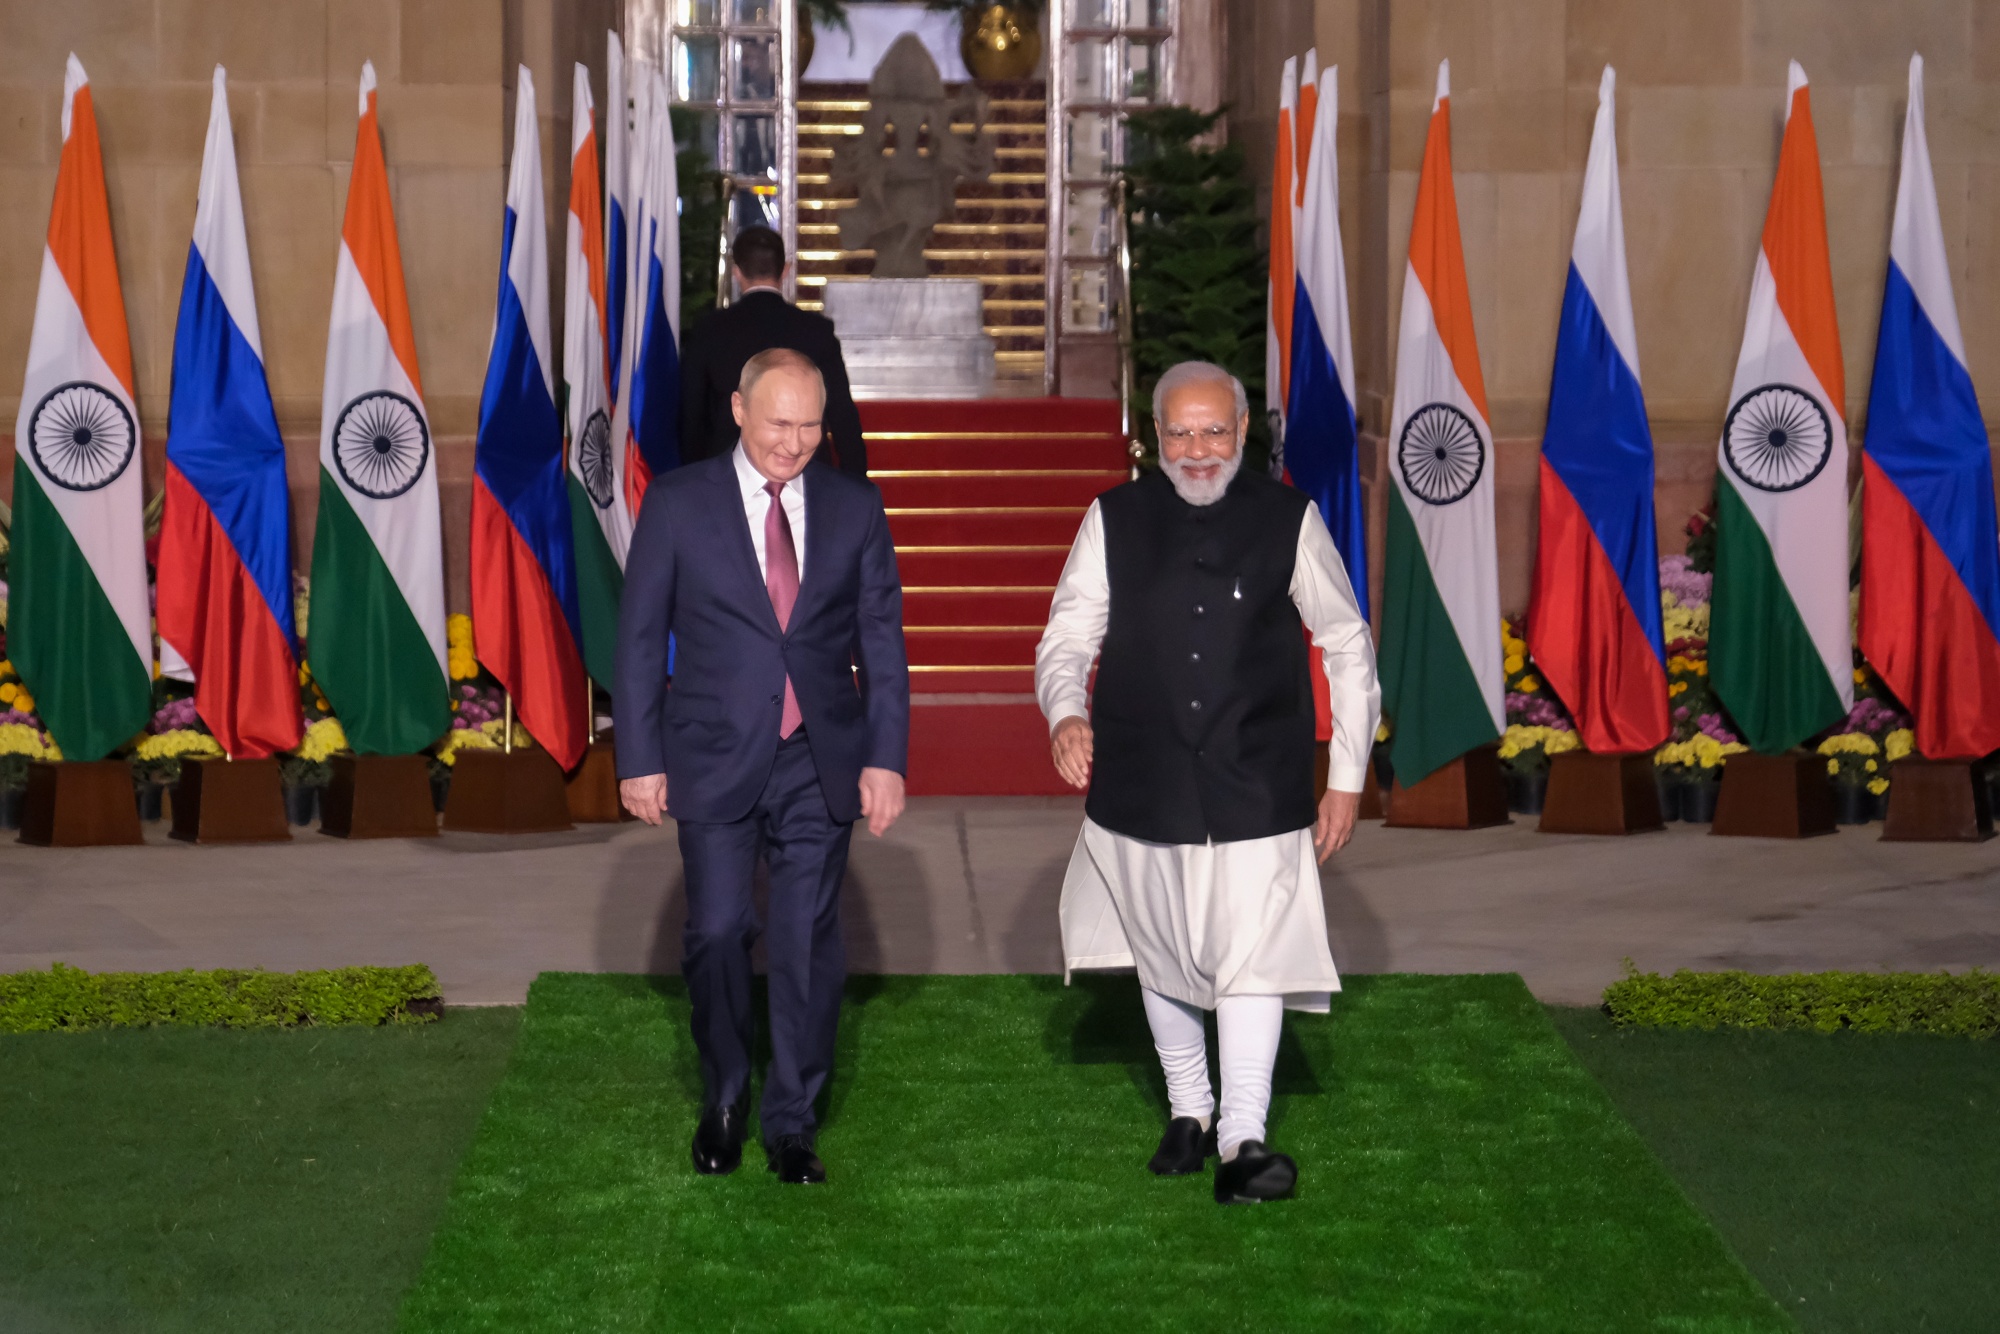 バイデン政権 インドに警告 ロシアと協力なら深刻な結果招く Bloomberg